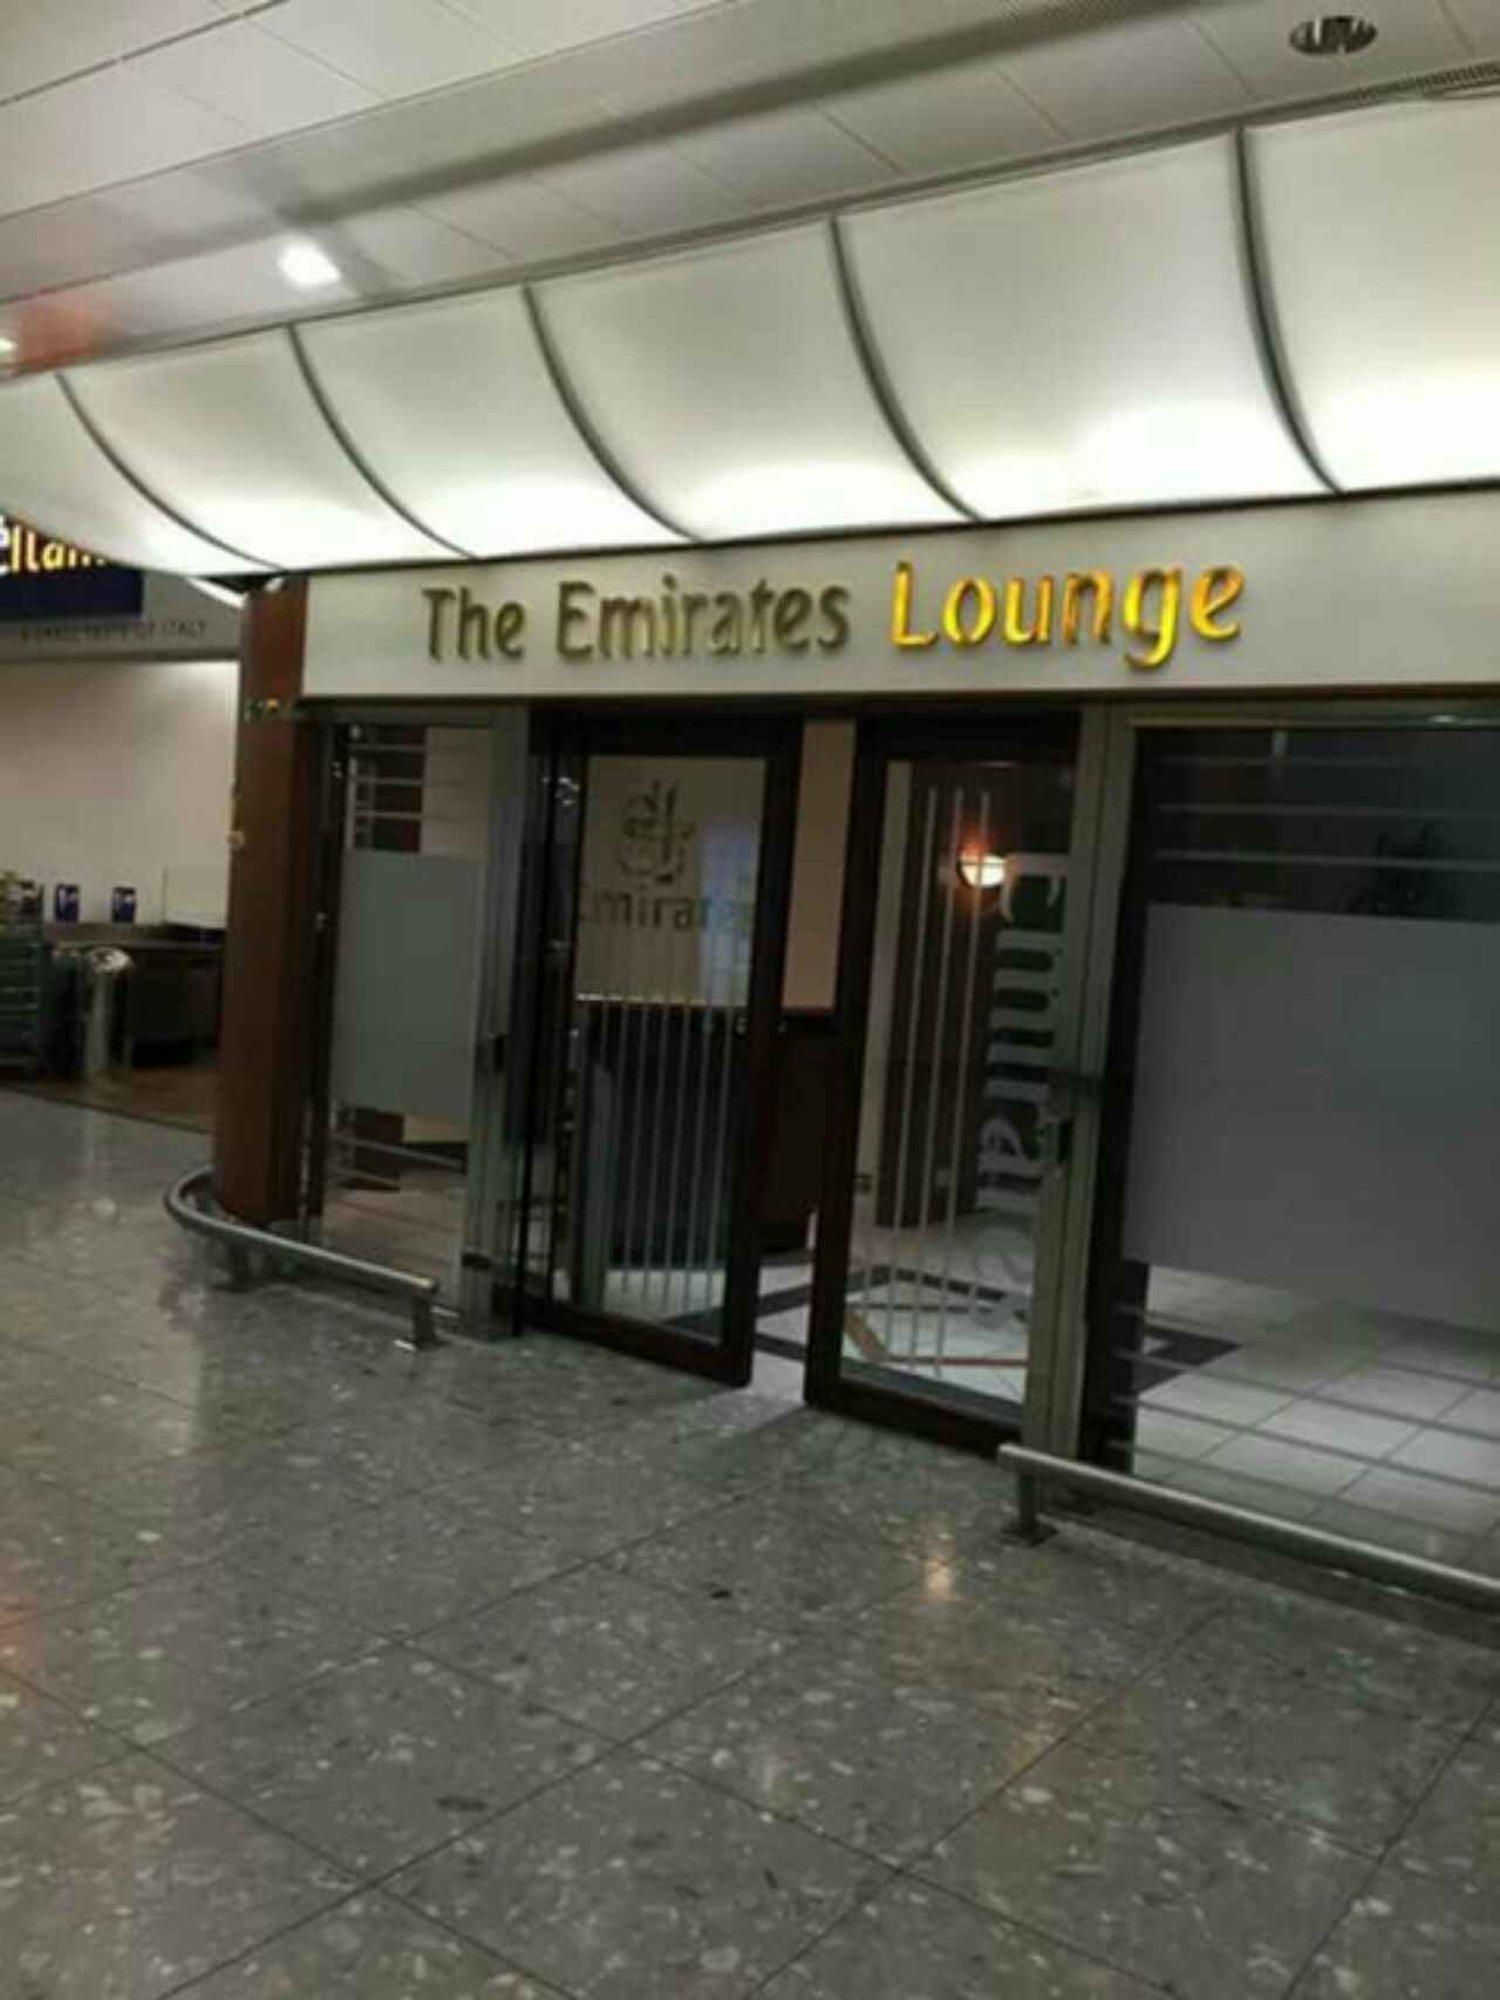 The Emirates Lounge image 10 of 10